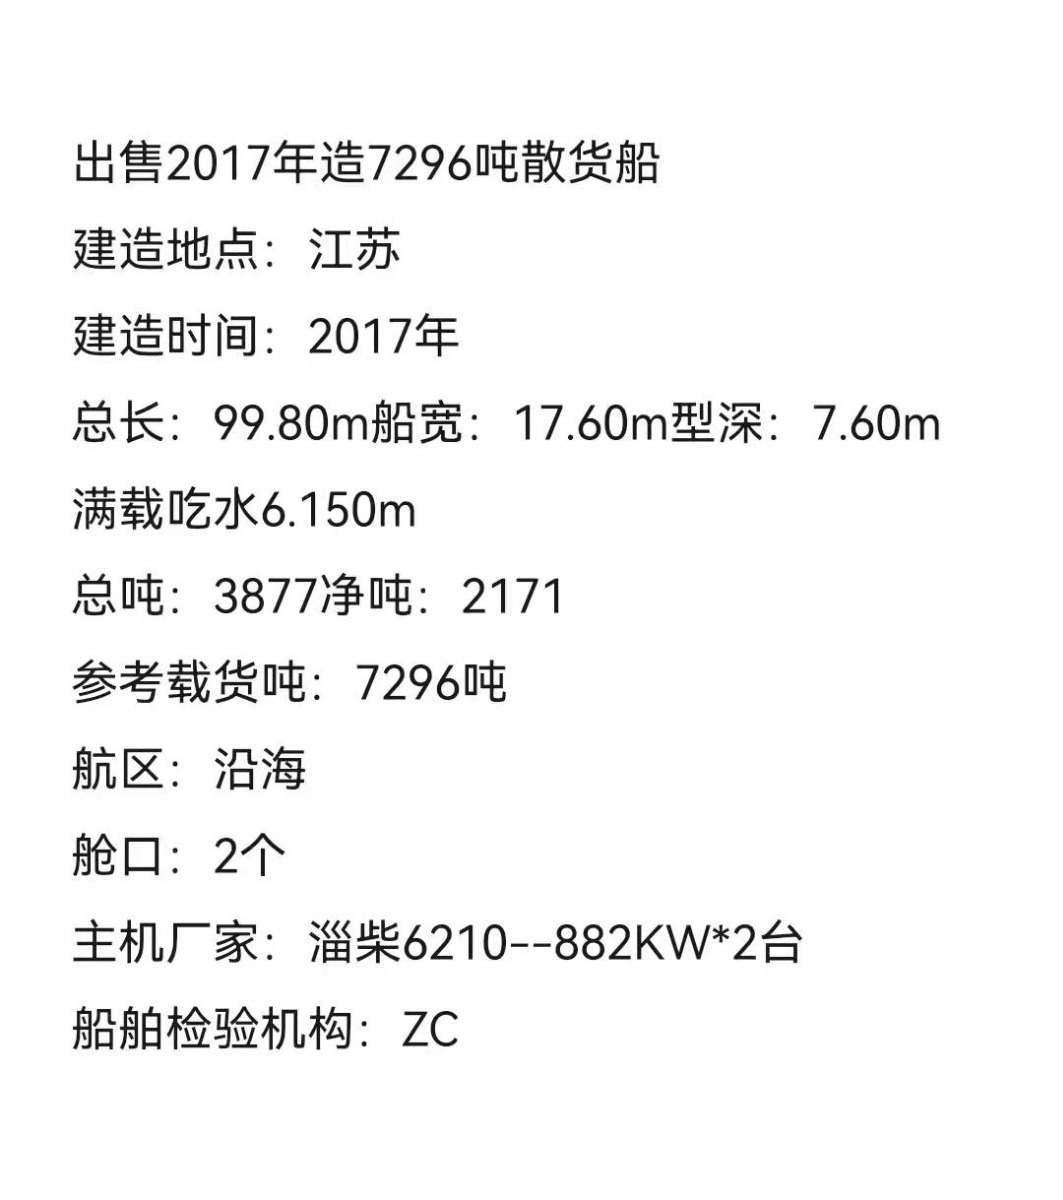  www.船舶交易.com·南通船舶网 二手船舶信息2017年江苏7269吨散货船一艘货船·散货船 